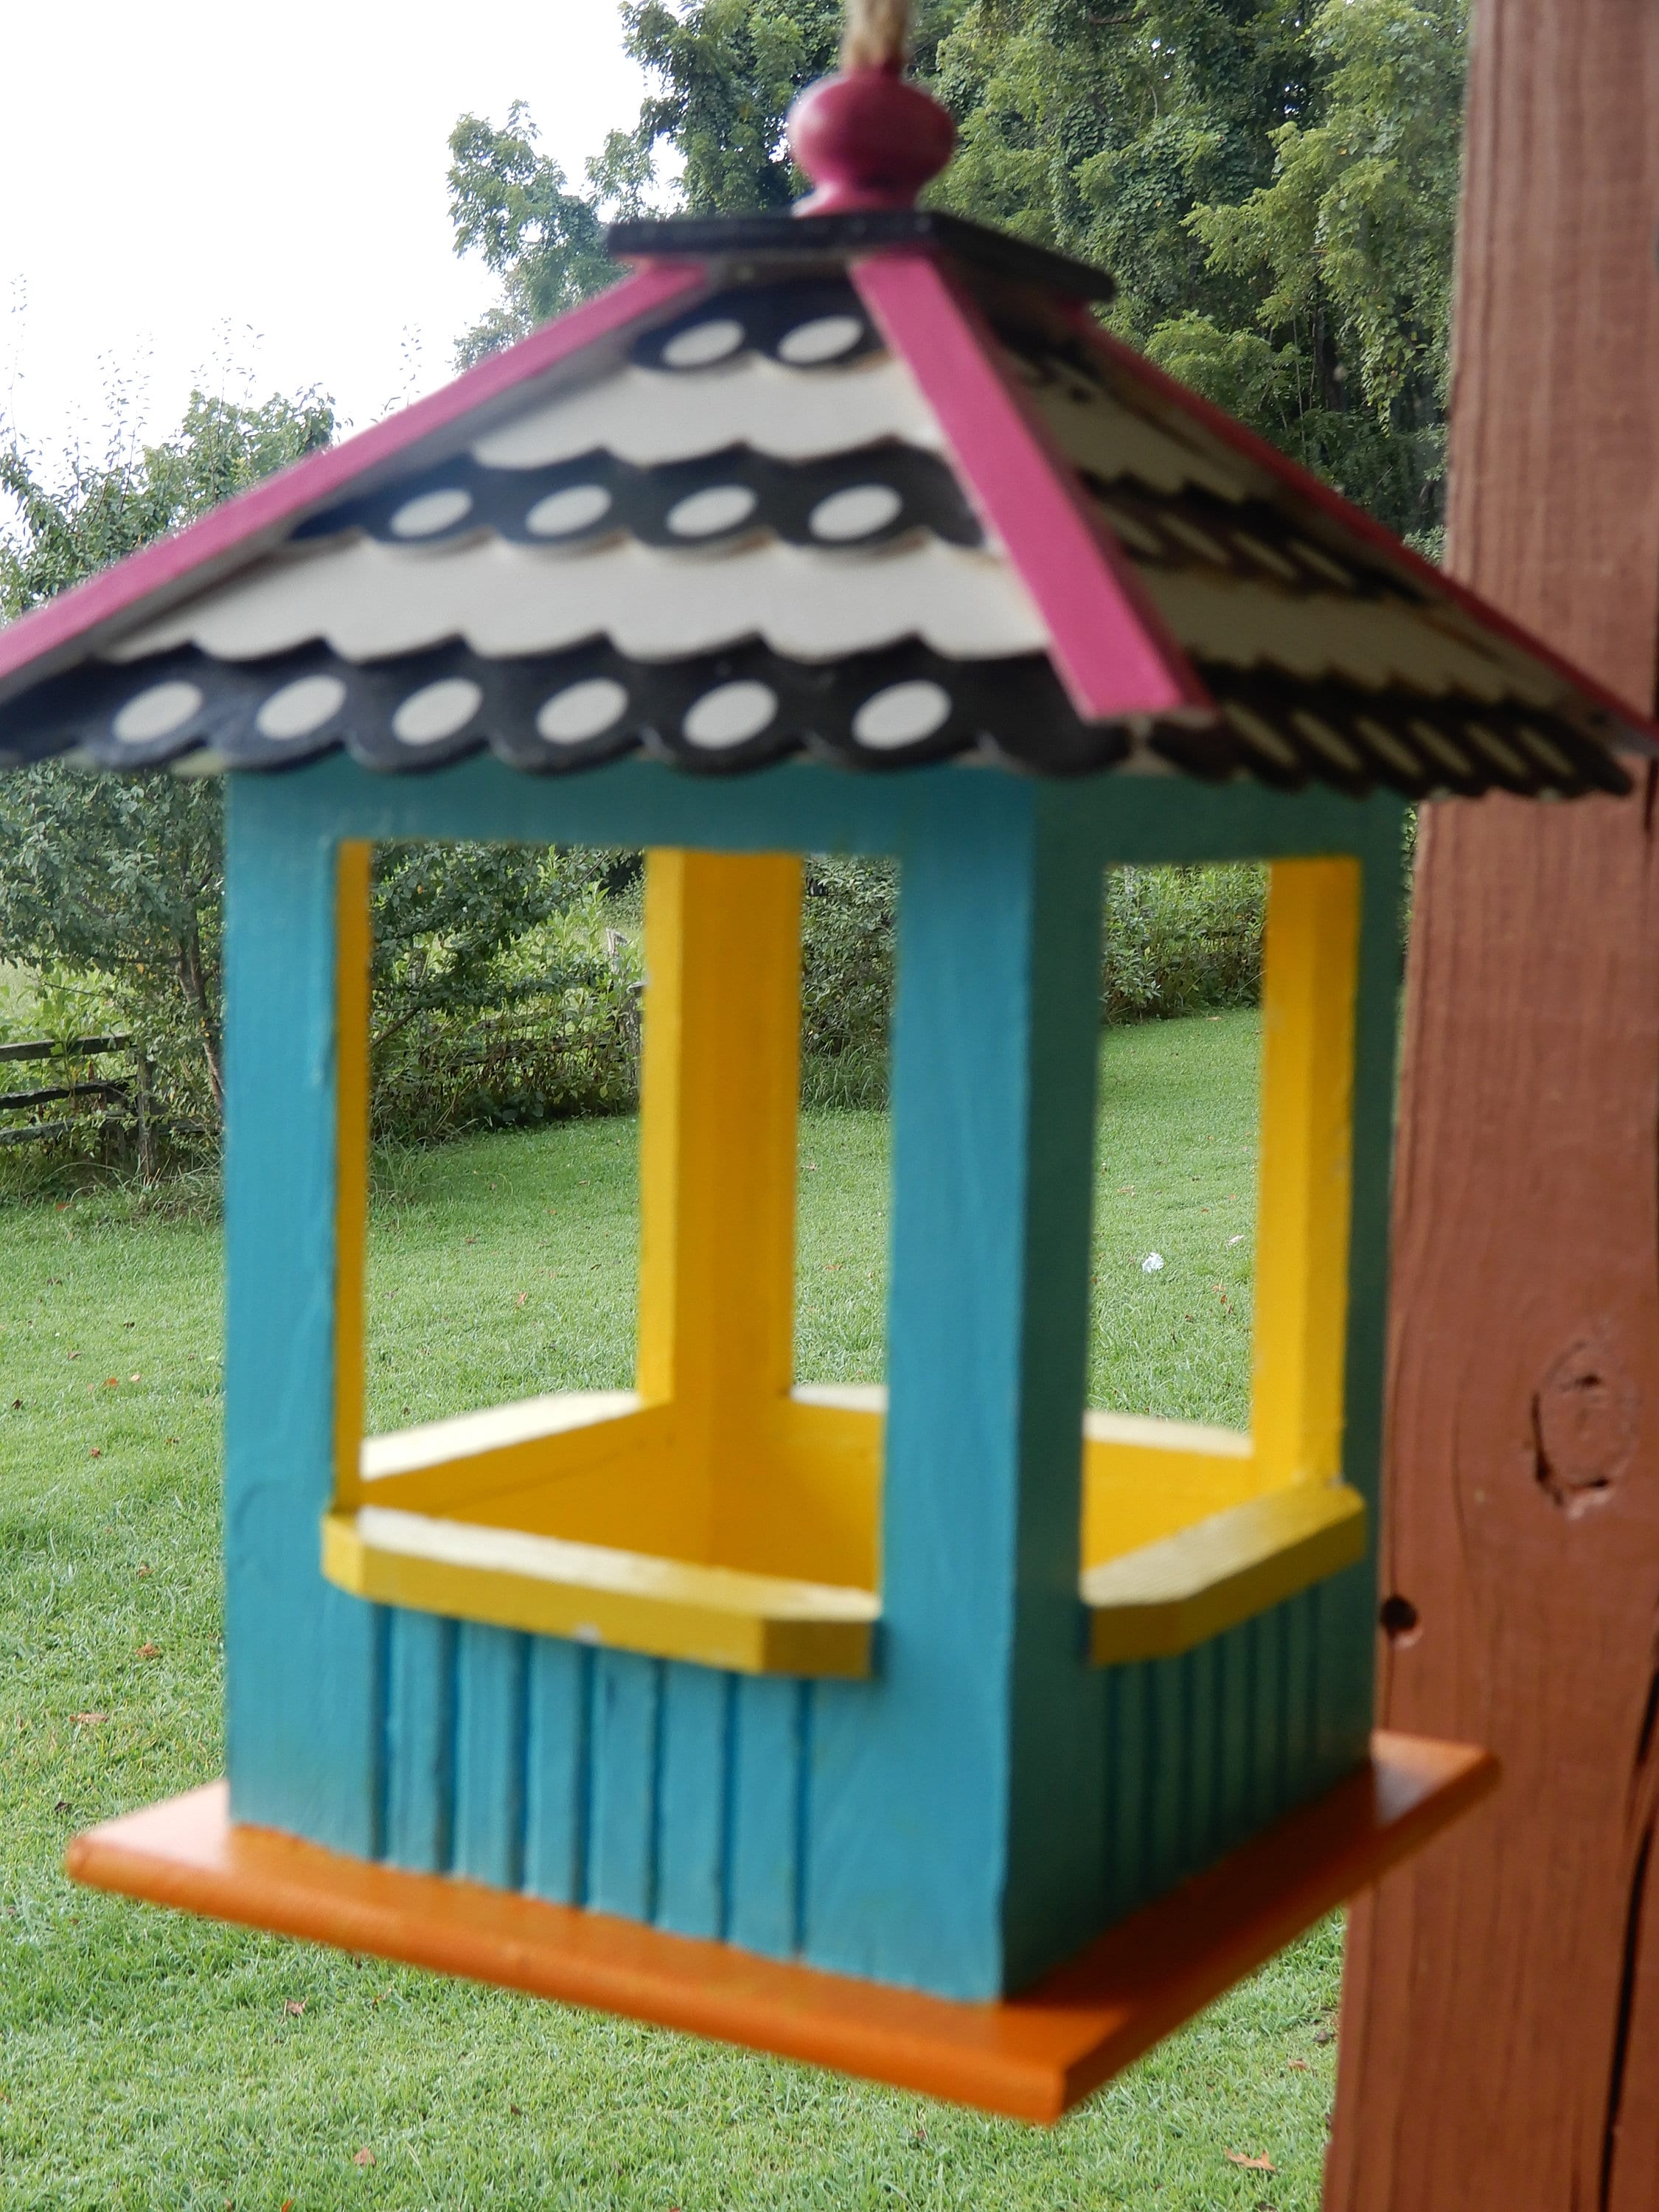 Painted wooden bird feeders